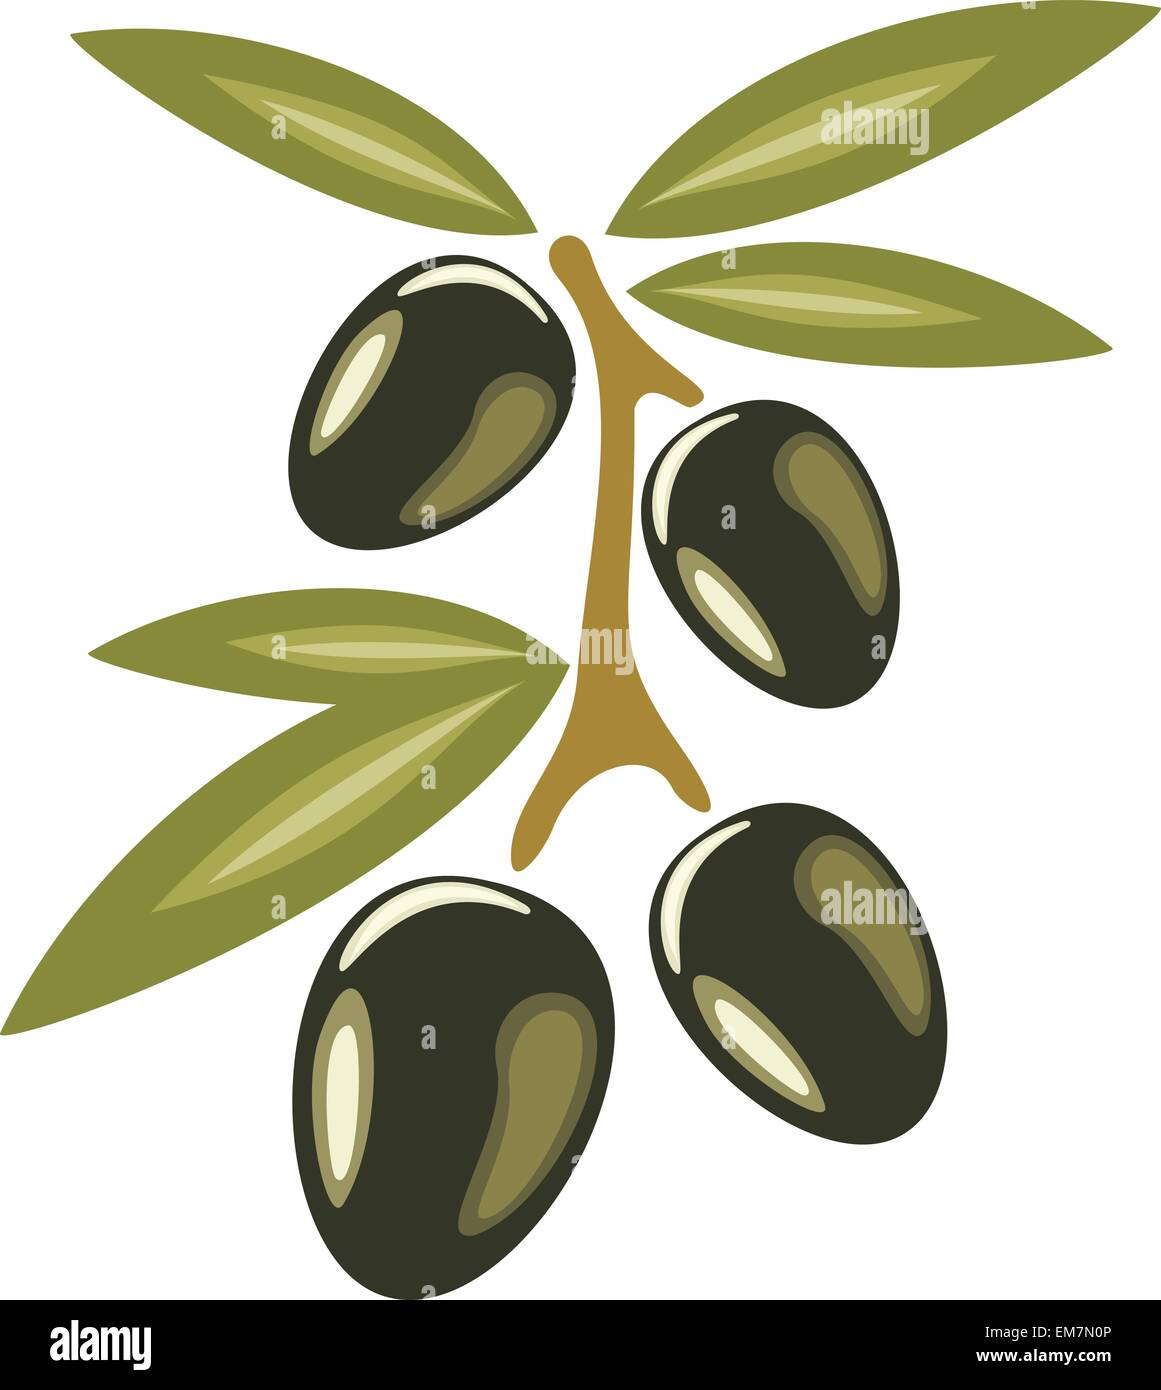 Rama de olivo, símbolo estilizado icono ilustración vectorial aislado Ilustración del Vector